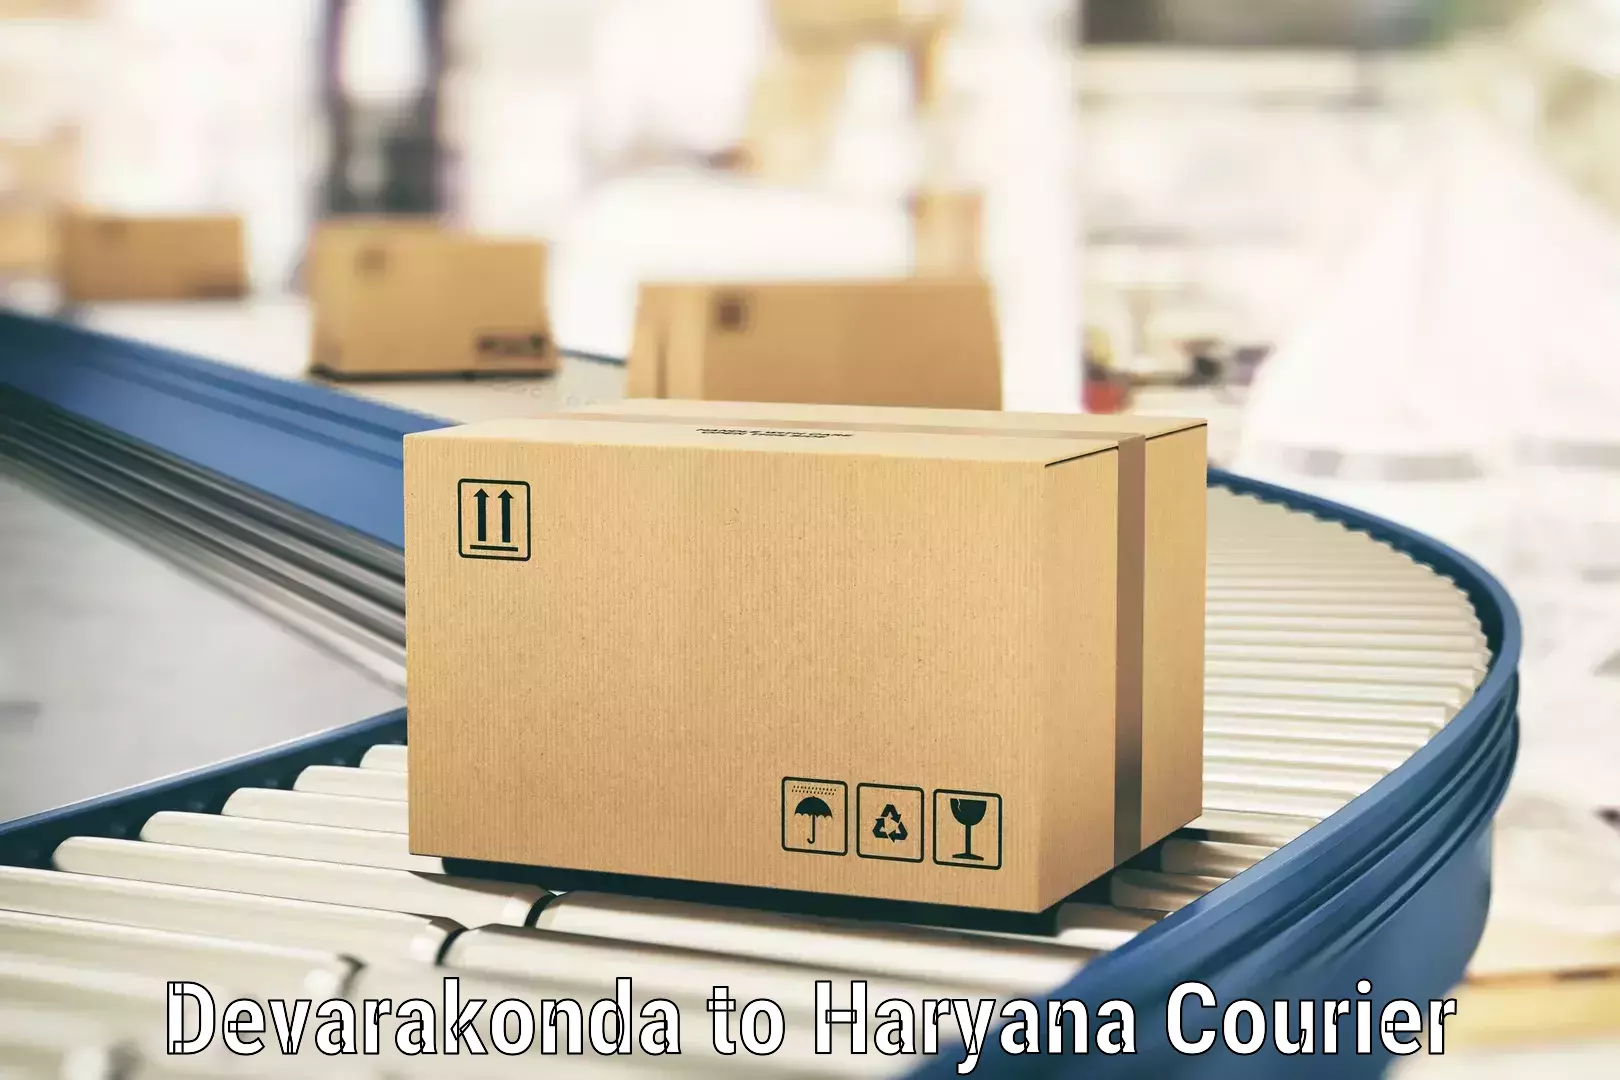 Express courier capabilities Devarakonda to IIIT Sonepat